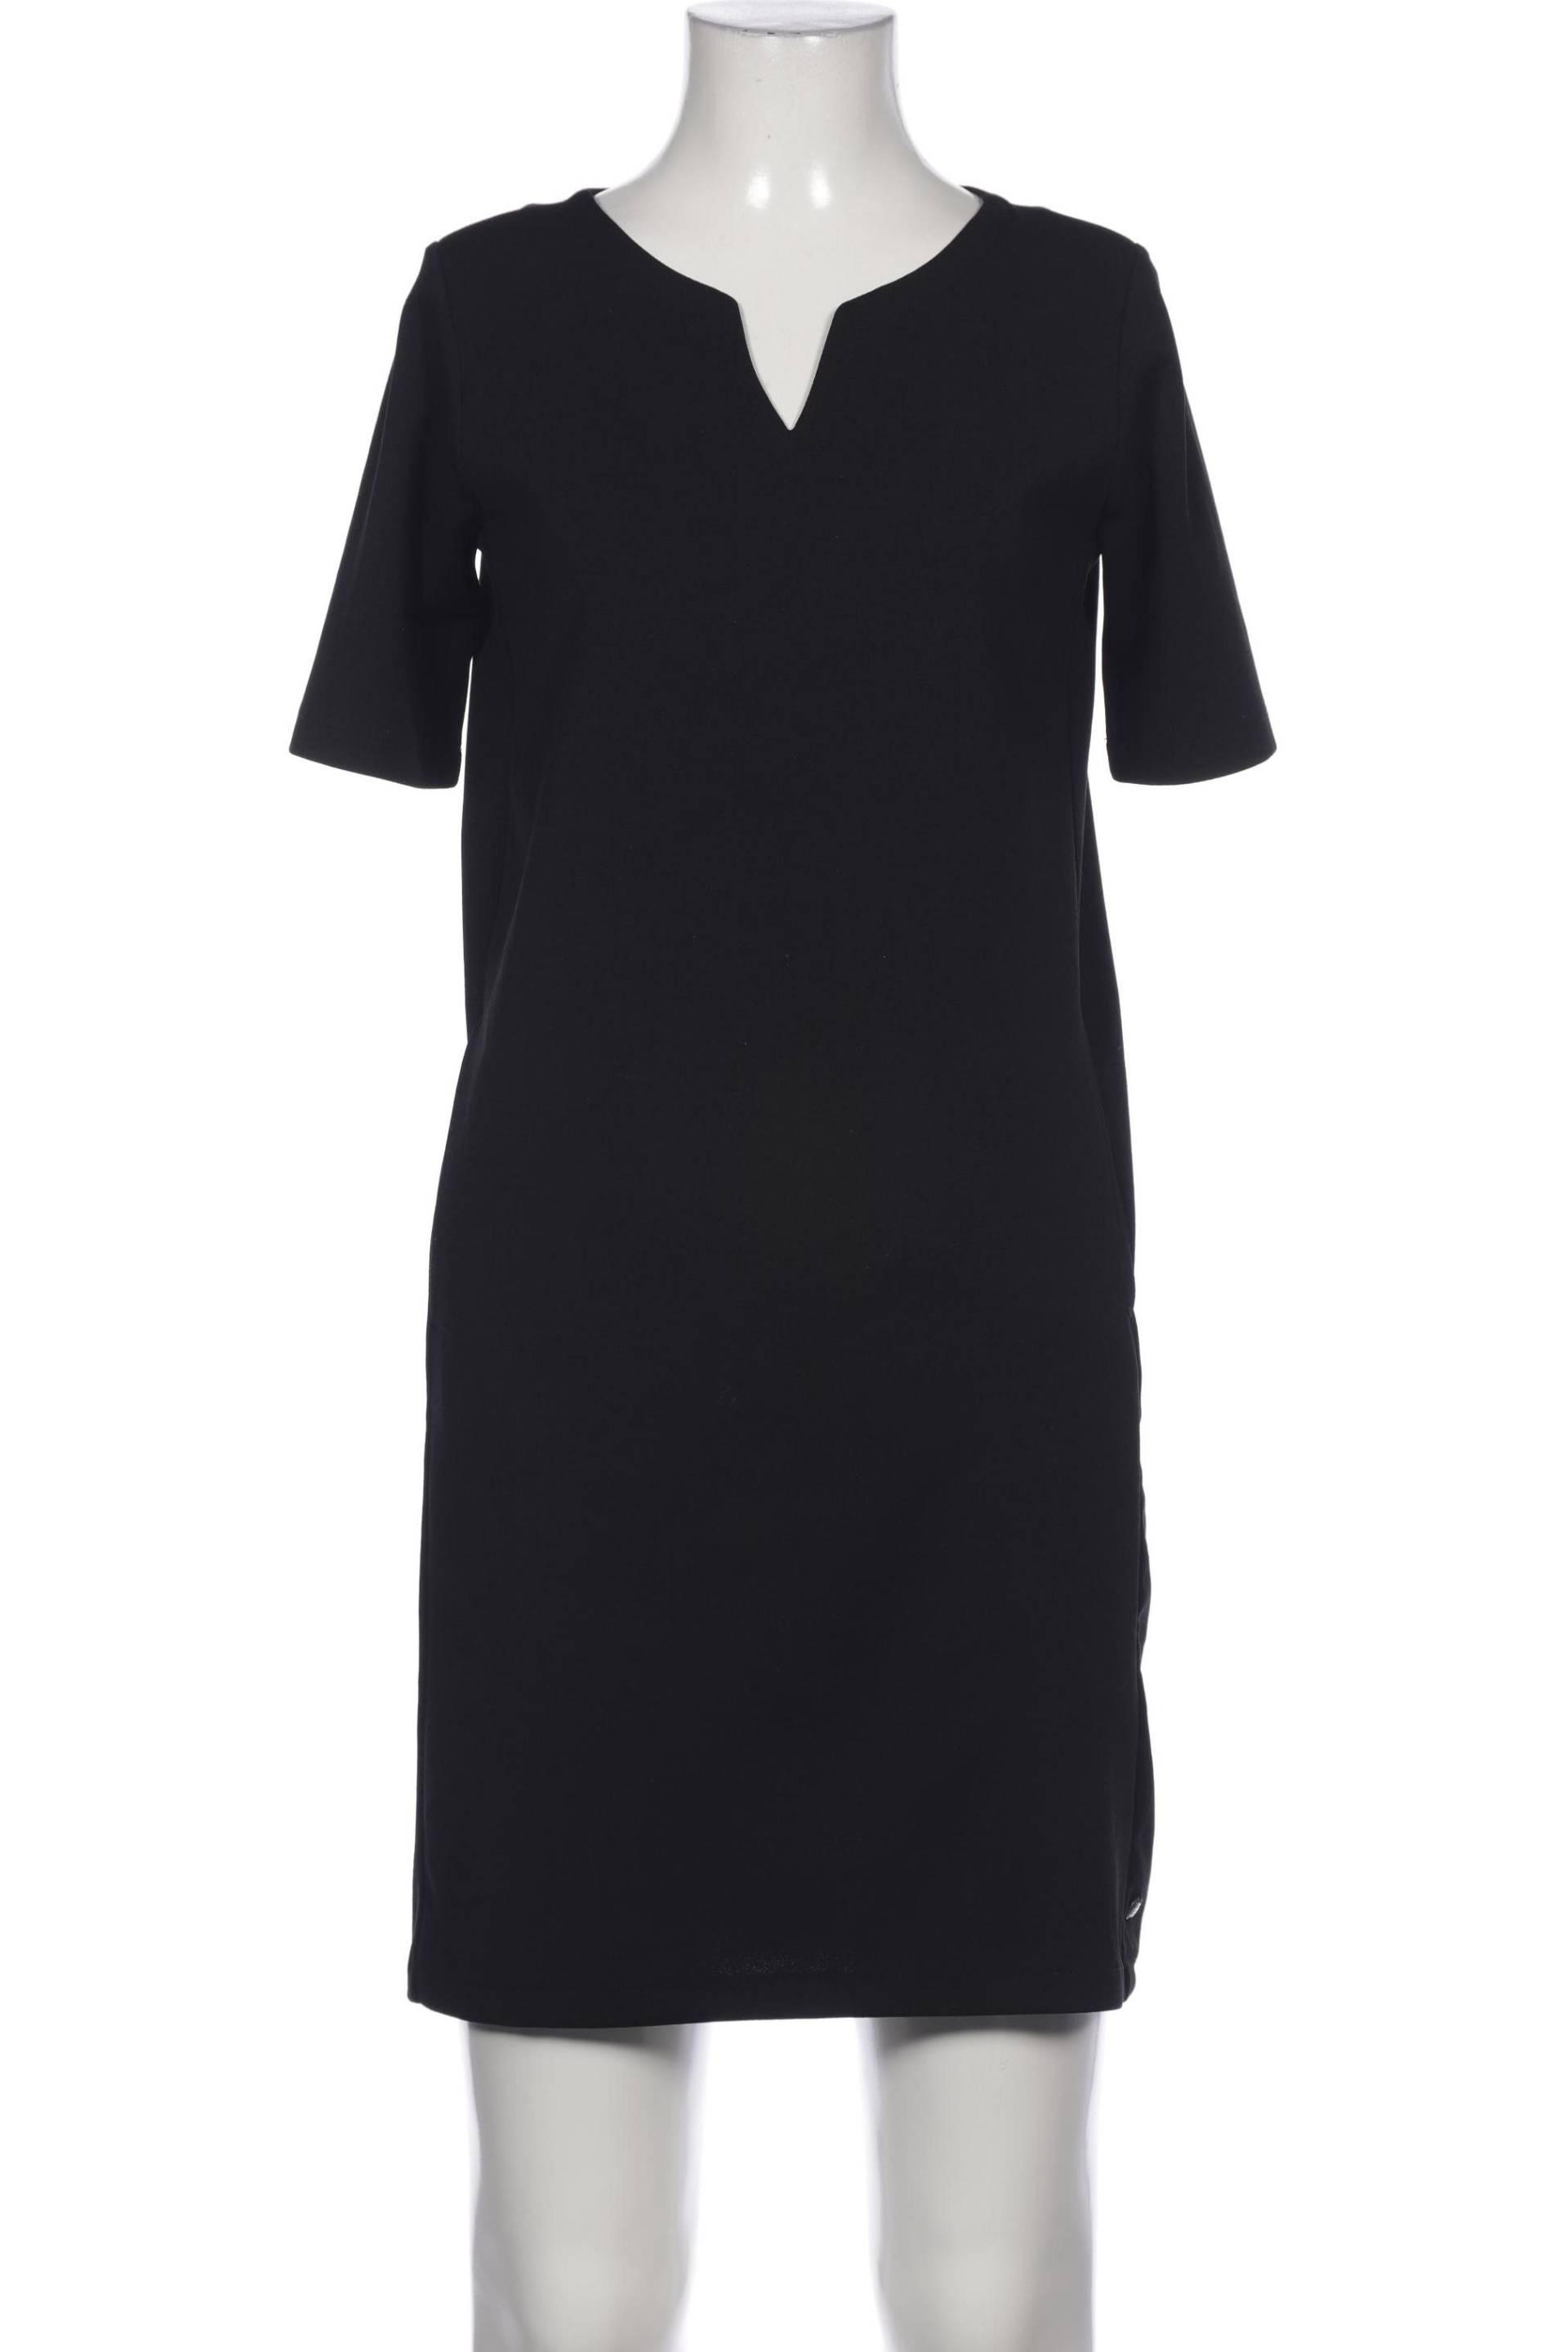 Garcia Damen Kleid, schwarz, Gr. 34 von GARCIA